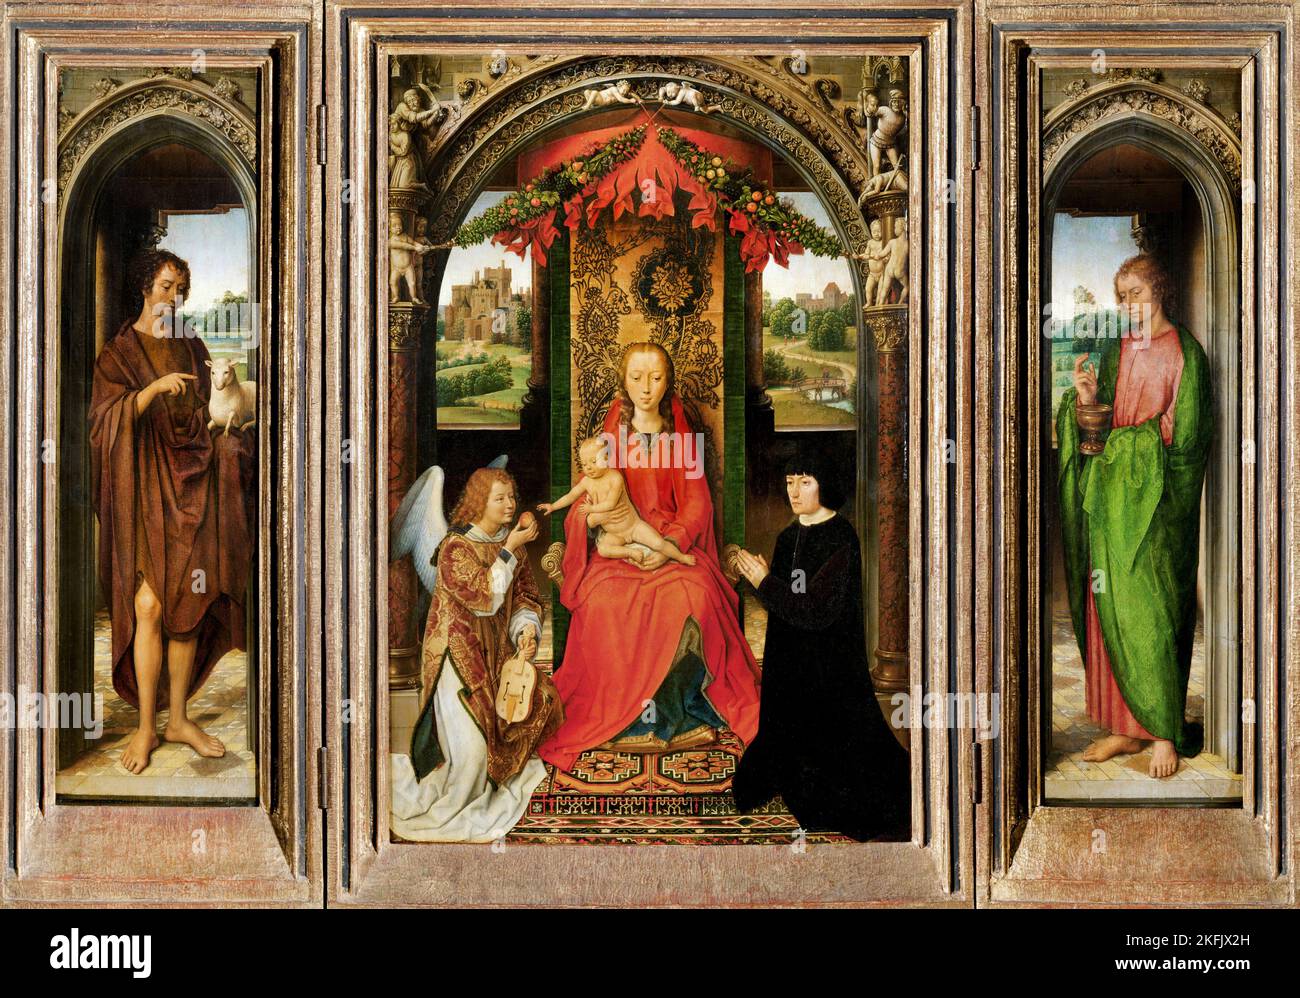 Hans Memling; kleines Triptychon des Hl. Johannes des Täufers; um 1485-1490; Öl auf Tafel; Kunsthistorisches Museum, Wien, Österreich. Stockfoto